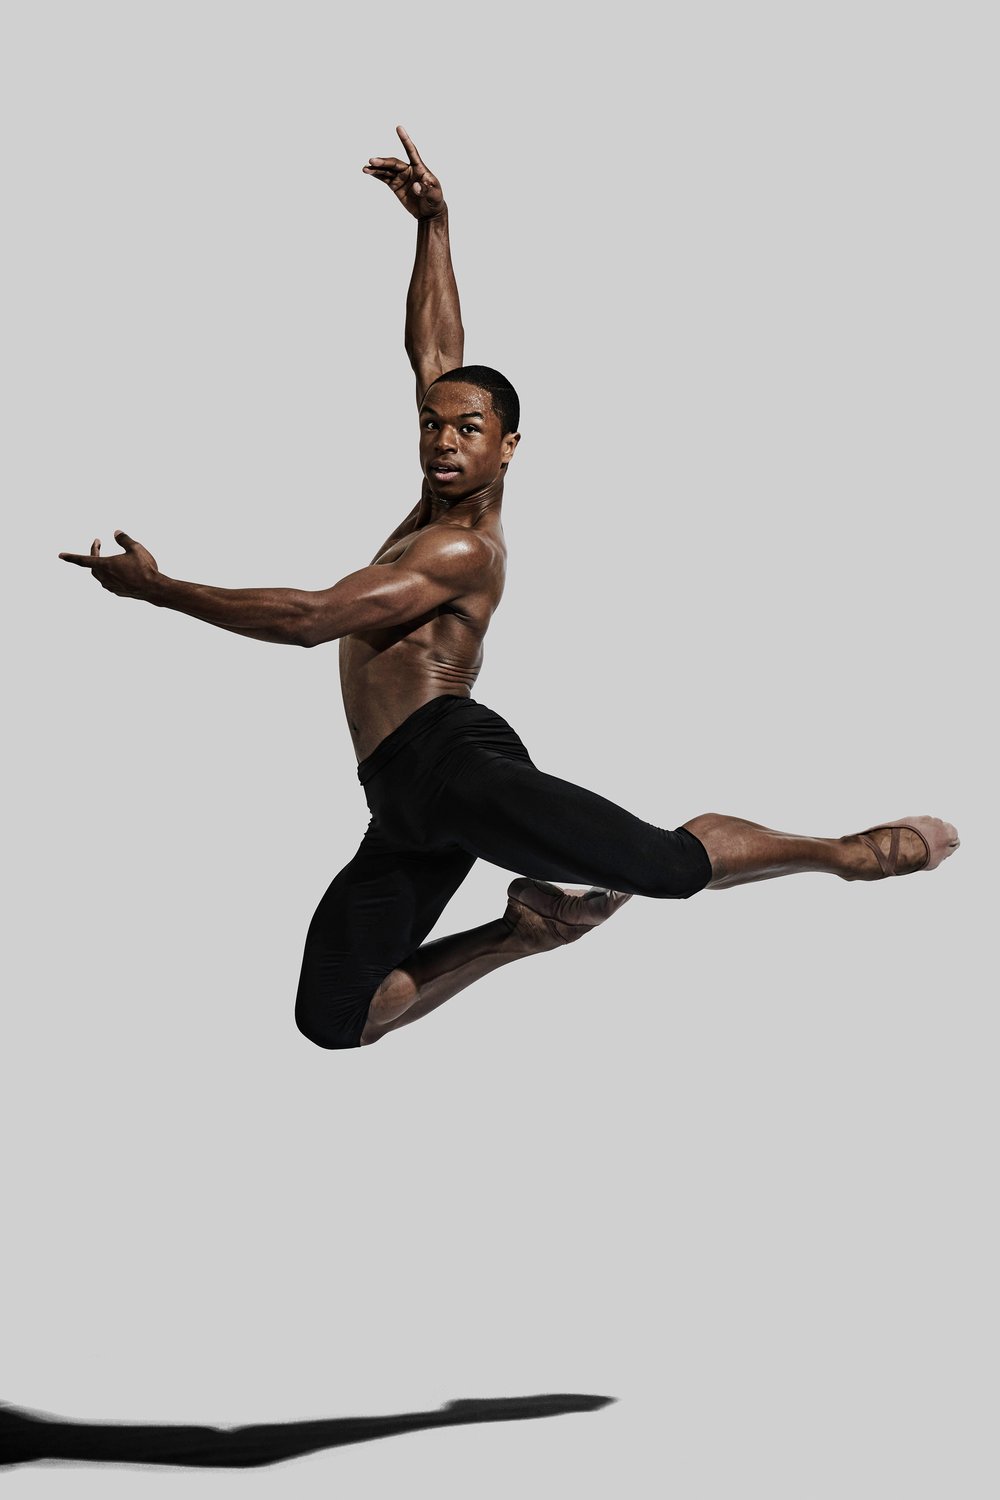 Image of José Alves, former Senior Artist with Ballet Black.